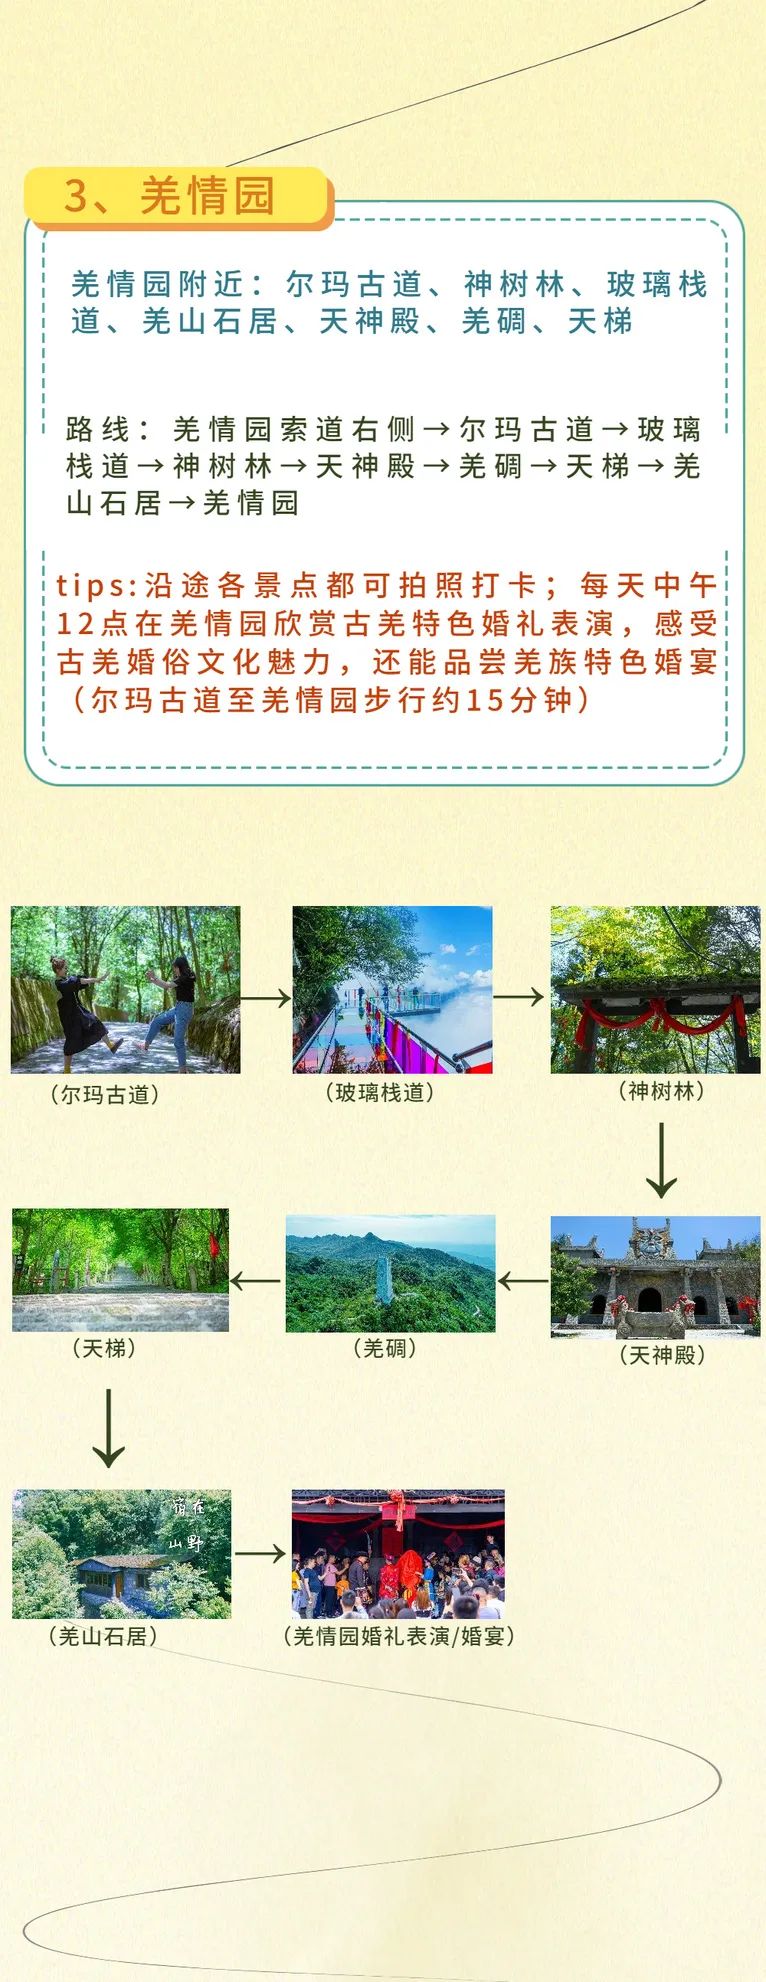 九皇山景区介绍图片